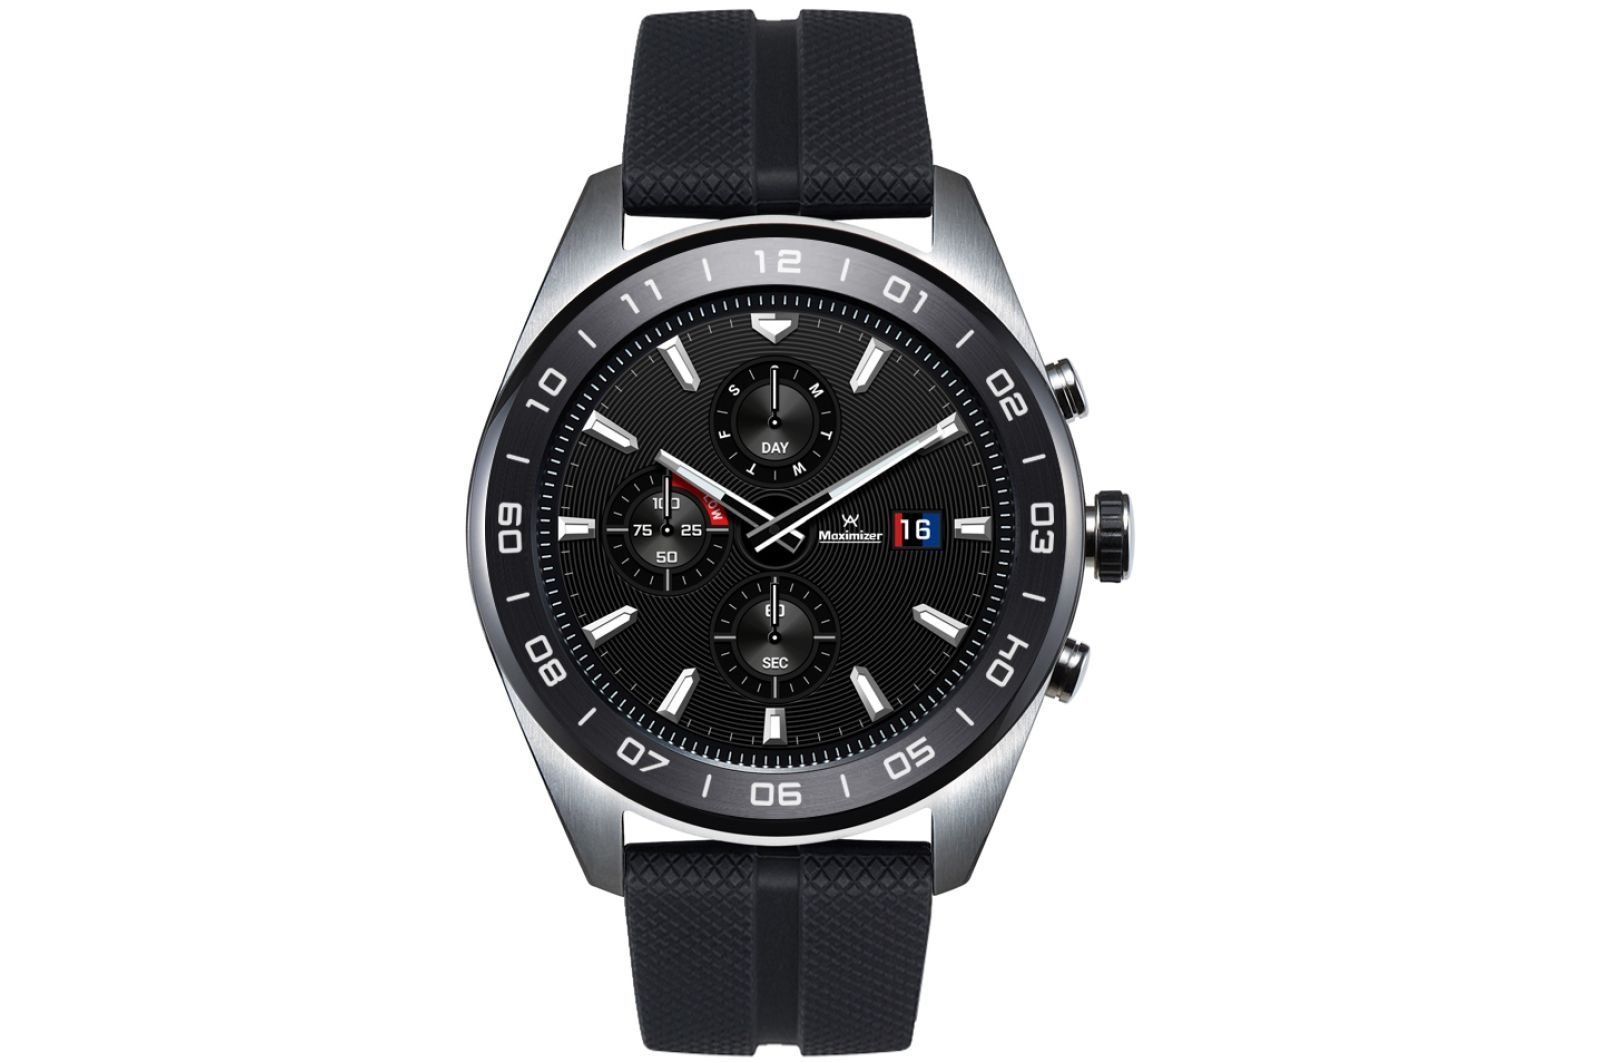 Montre intelligente LG Watch W7 - avantages et inconvénients